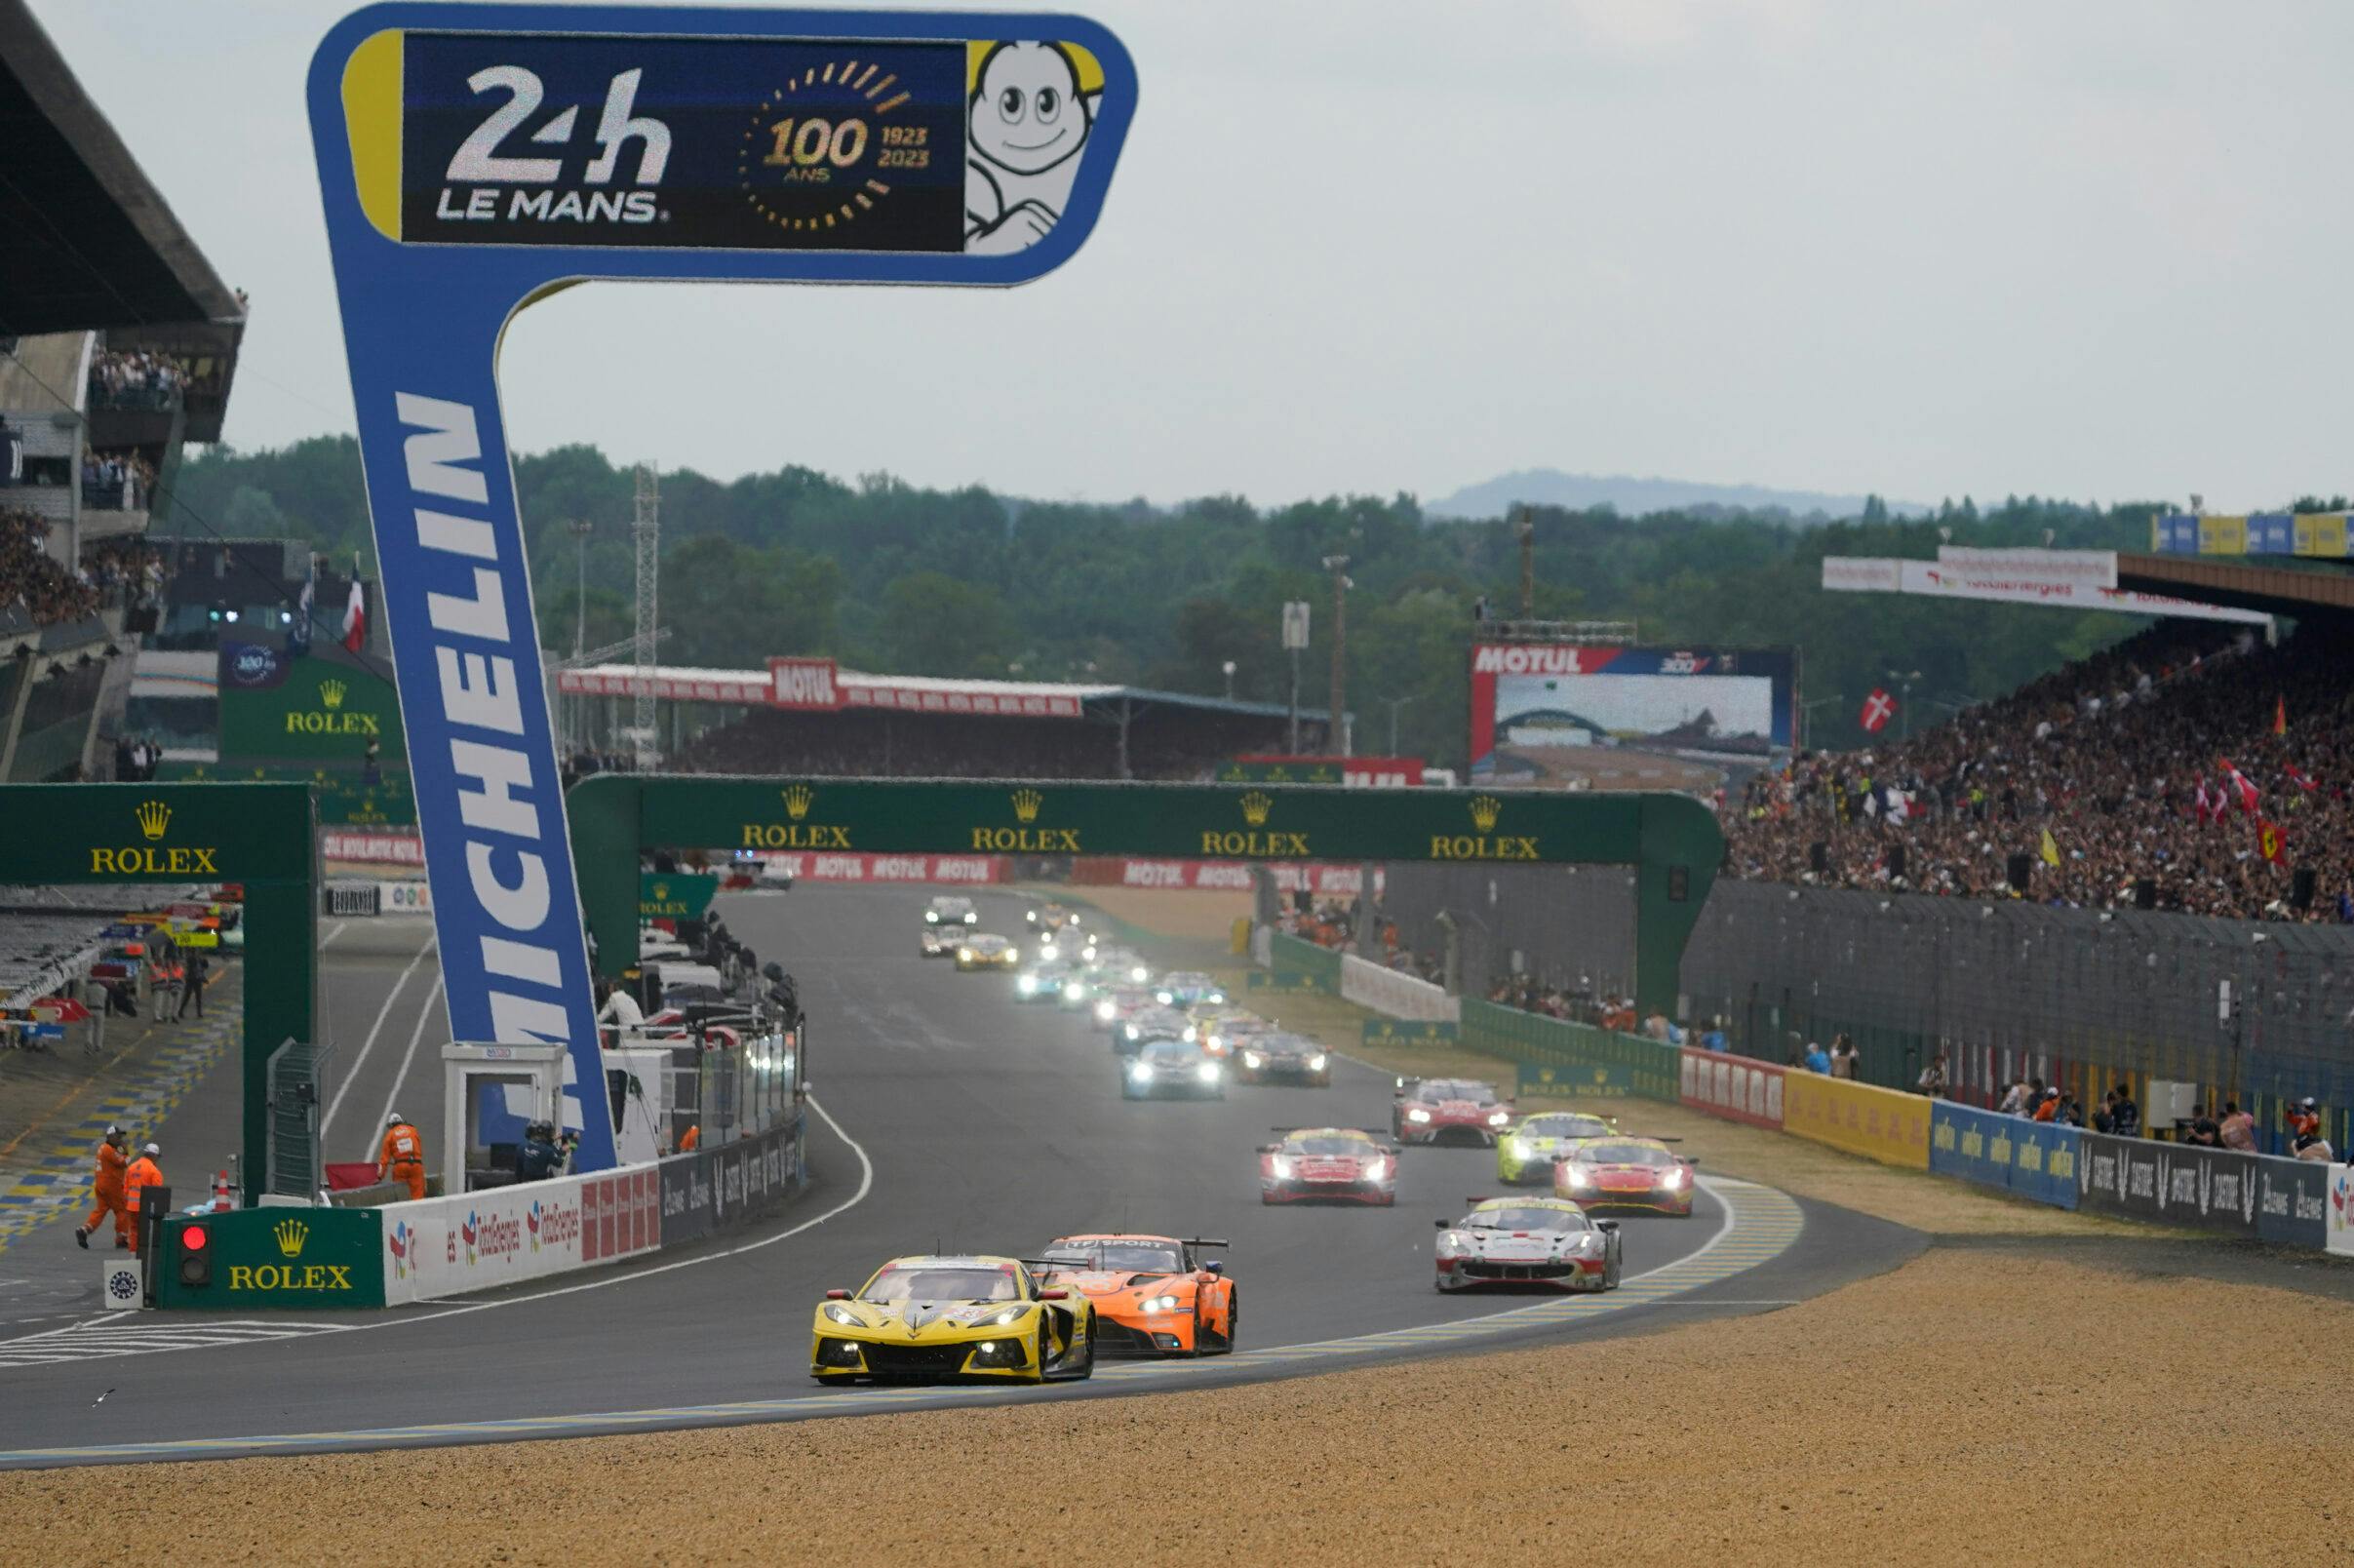 Le Mans 24 Hour Race 2023 Corvette C8.R wide